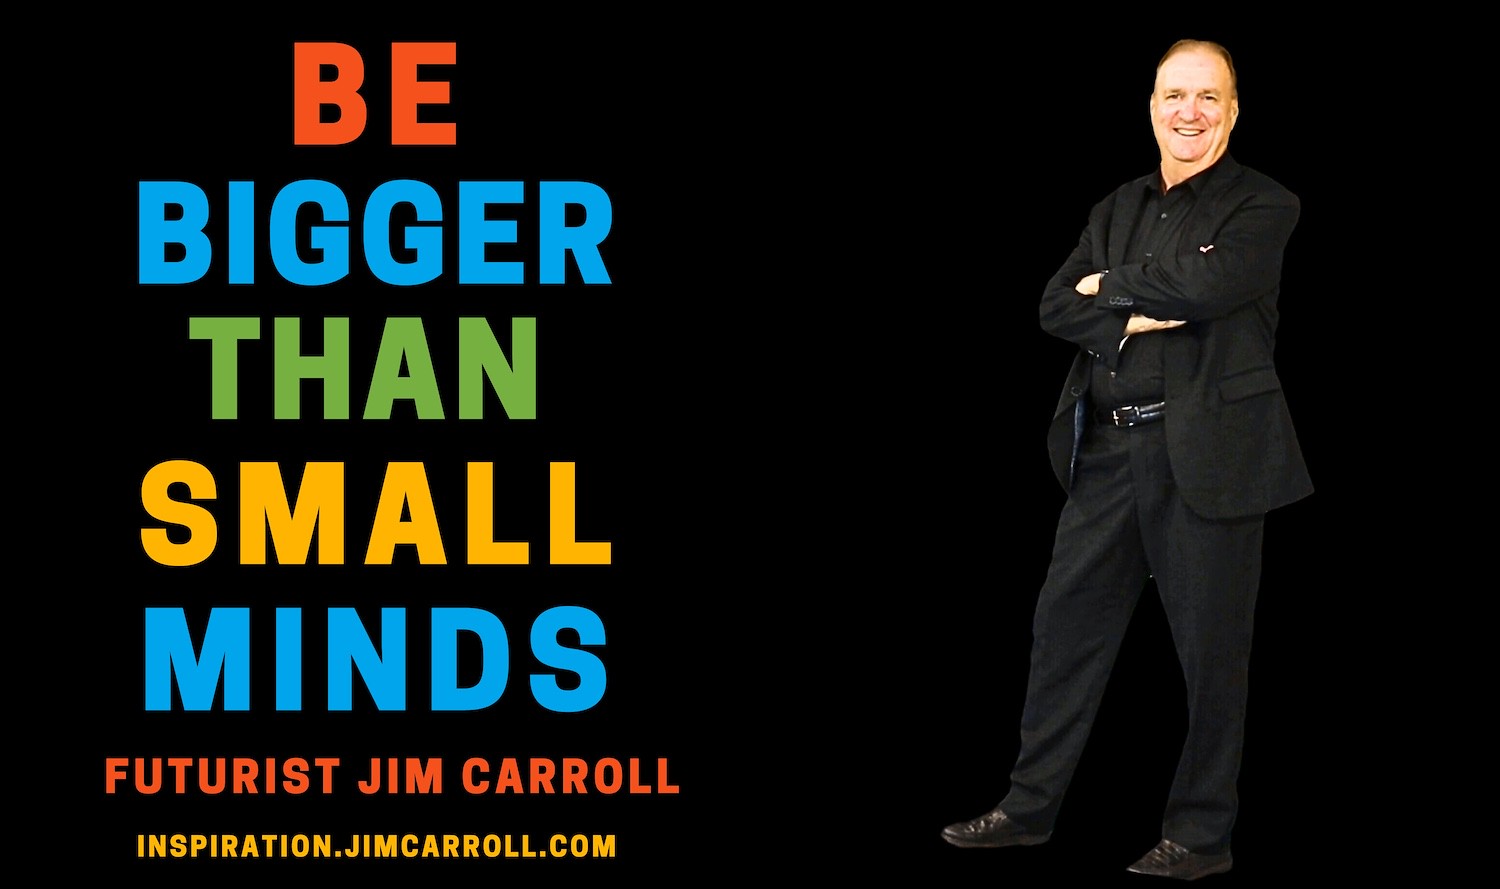 "Be bigger than small minds" - Futurist Jim Carroll